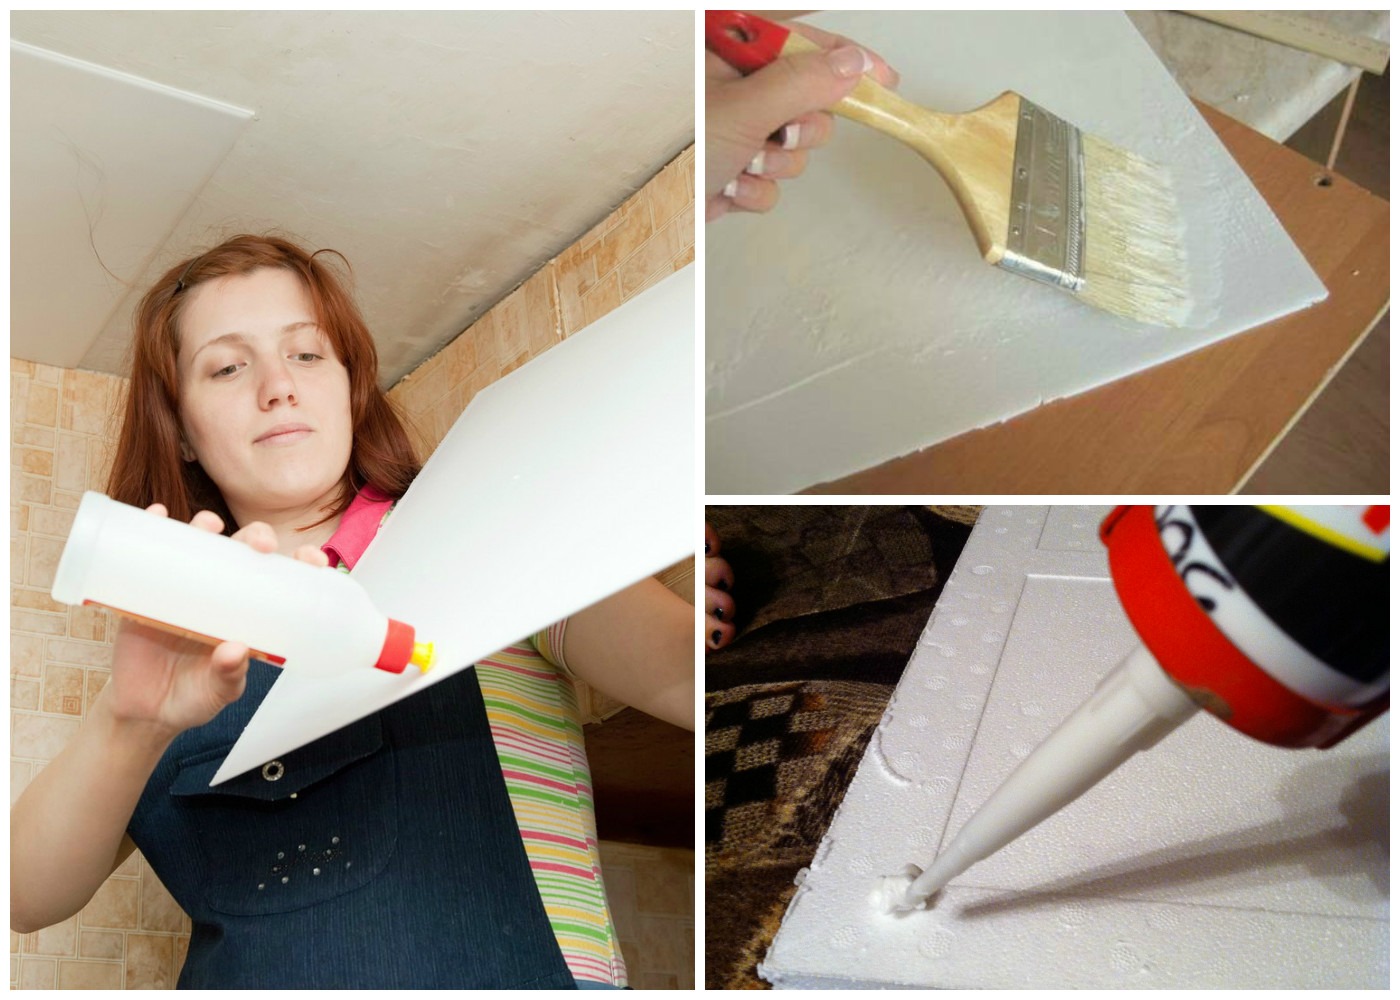 Как самостоятельно поклеить потолочную плитку: пошаговая инструкция